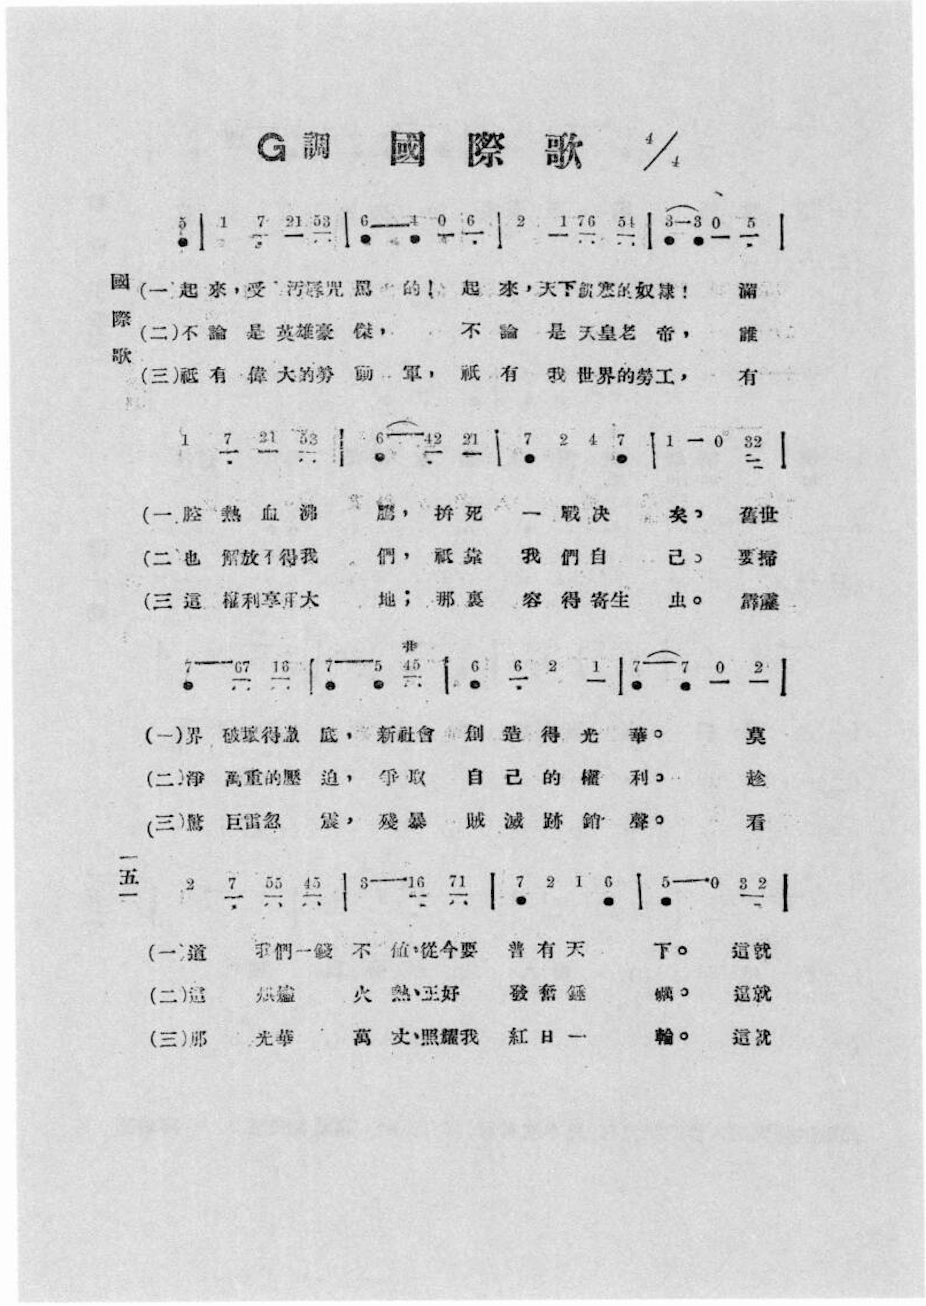 他让诗变成歌，《国际歌》在中国是如何传唱百年的？